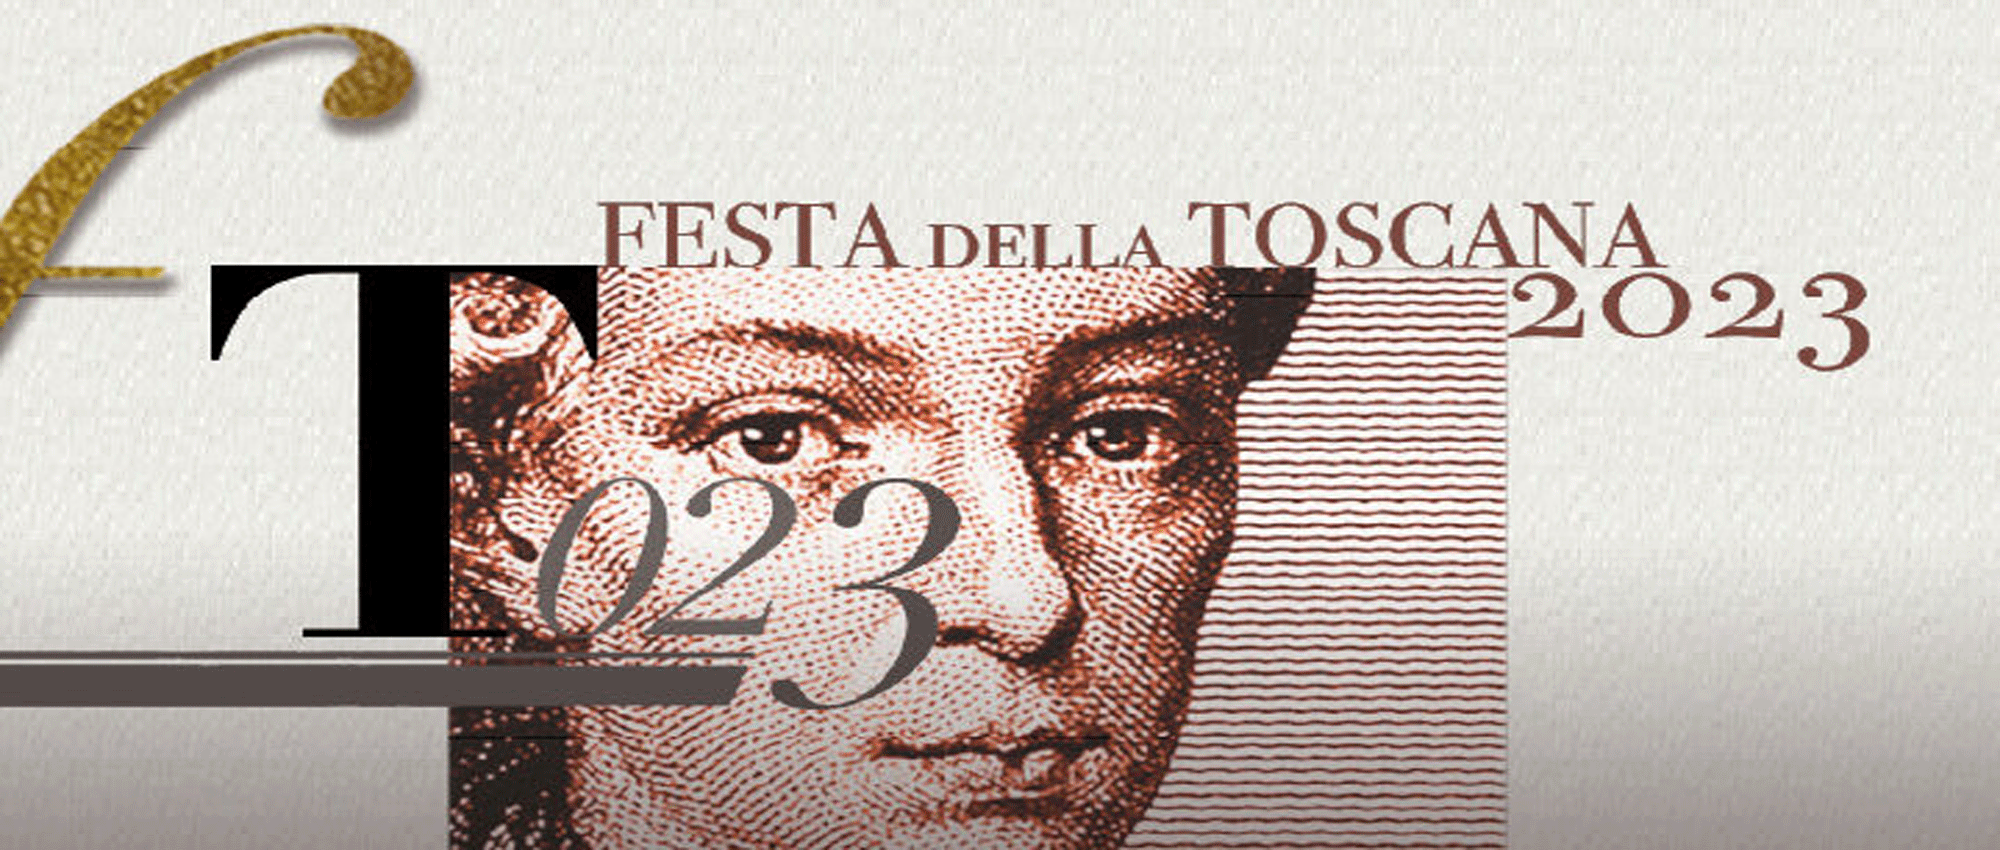 Festa della Toscana: Mazzeo, continuiamo ad essere terra di diritti, libertà e accoglienza